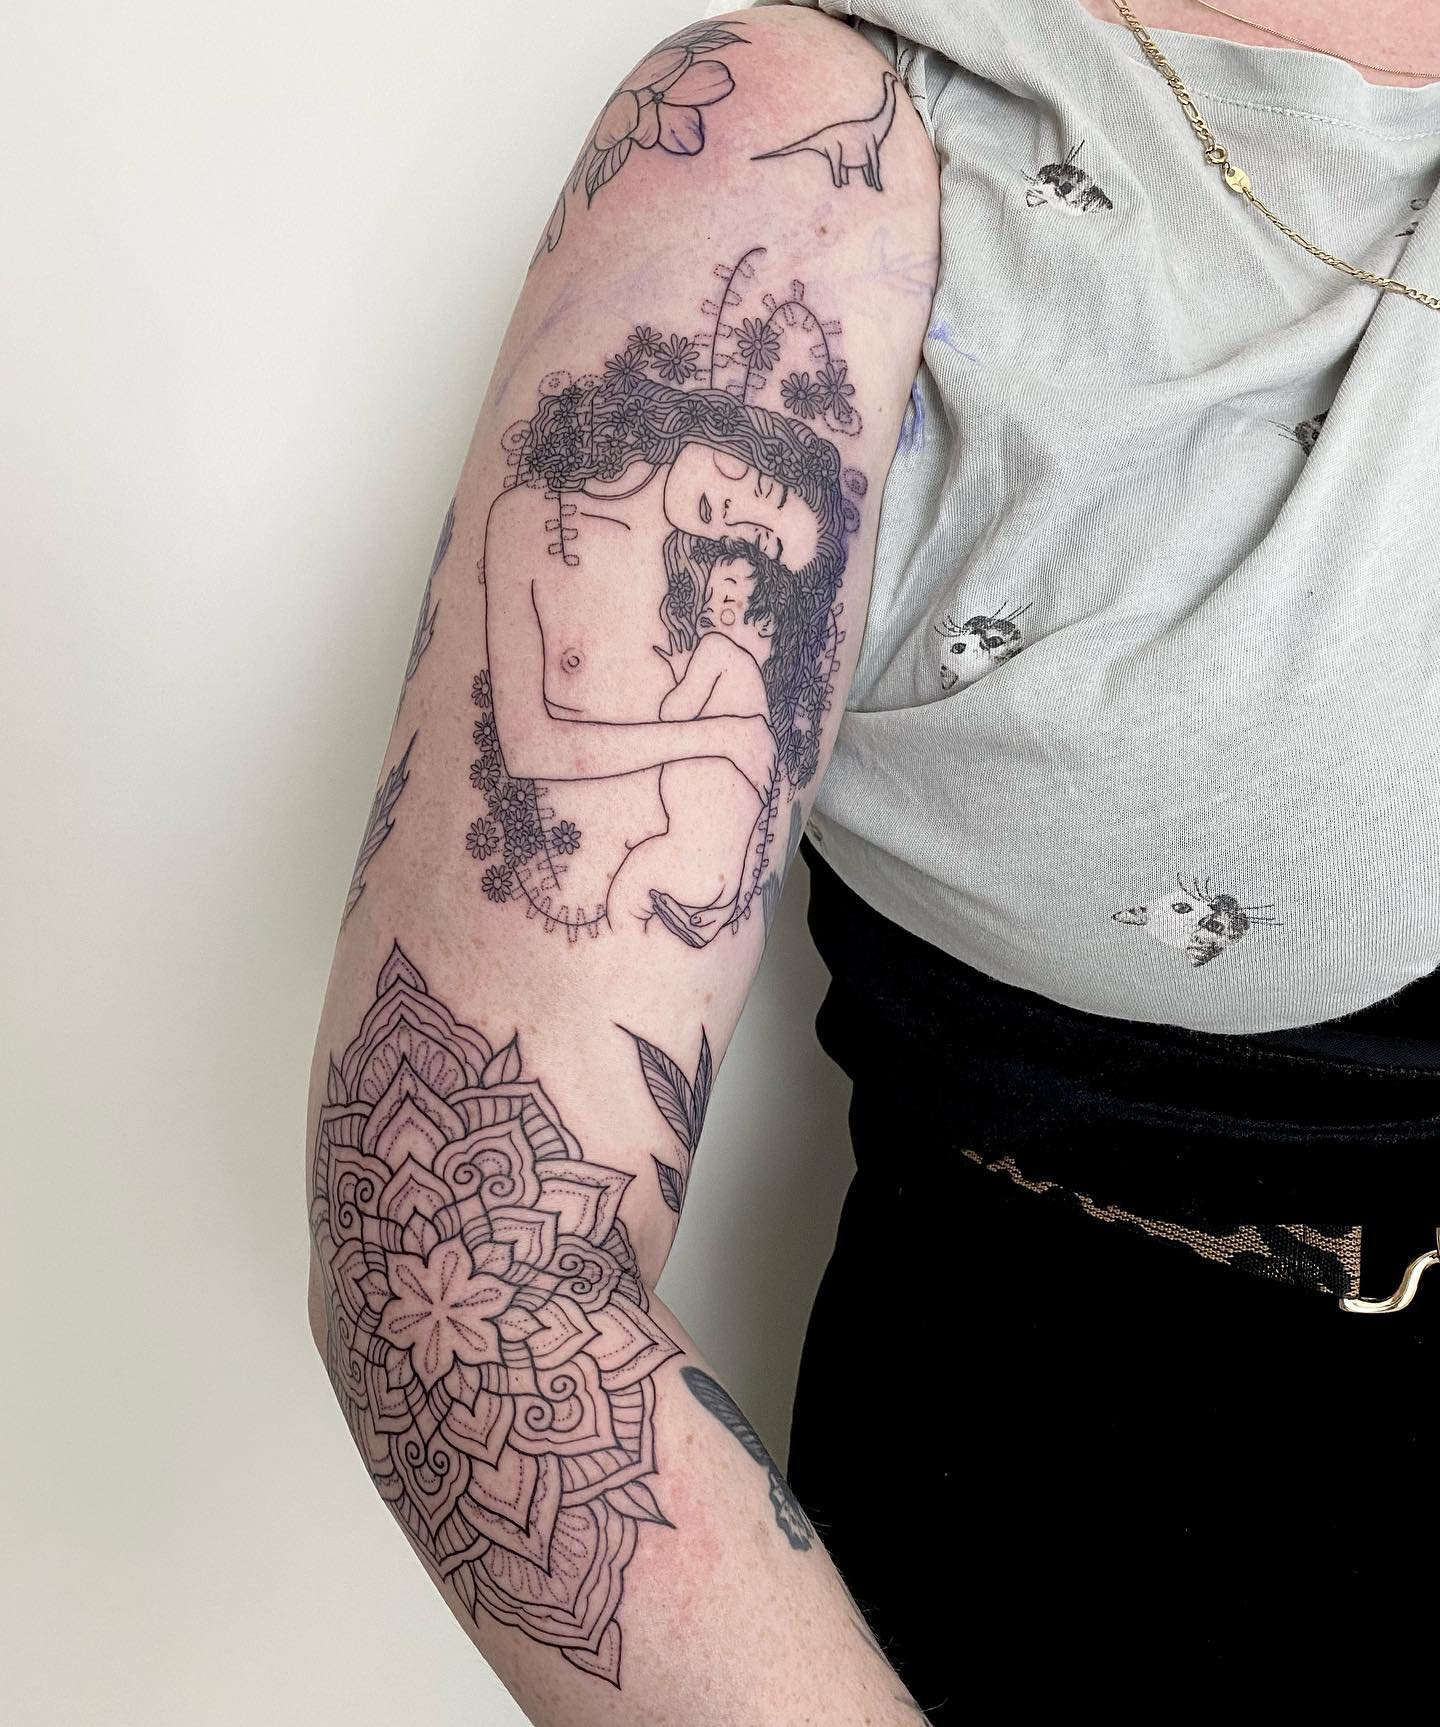 Outlines fertig auf meiner lieben liebsten @frau_bruun  
.
.
.
#tattoos #blackta